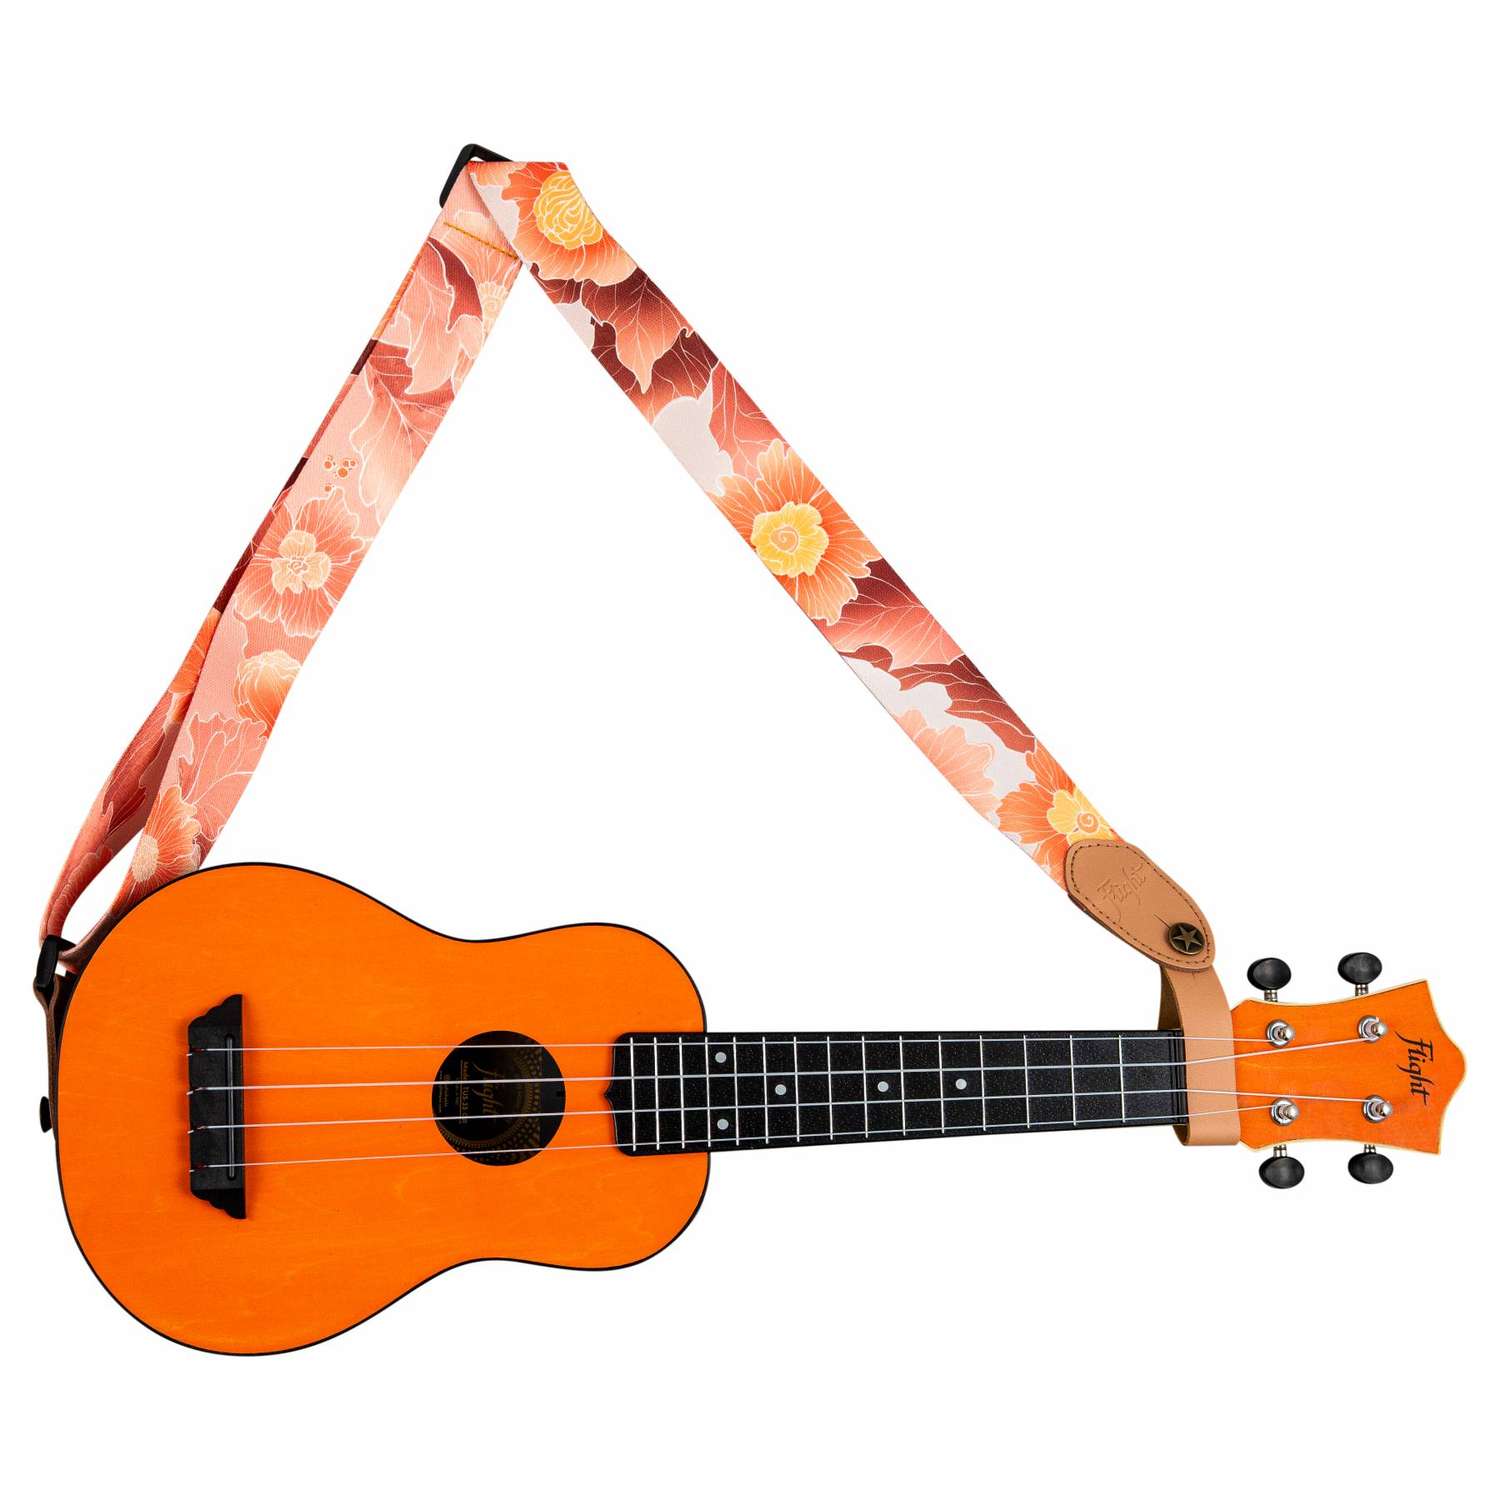 Ремень Flight S35 FLOWER для гавайской гитары укулеле материал полипропилен розовый с цветами - фото 4